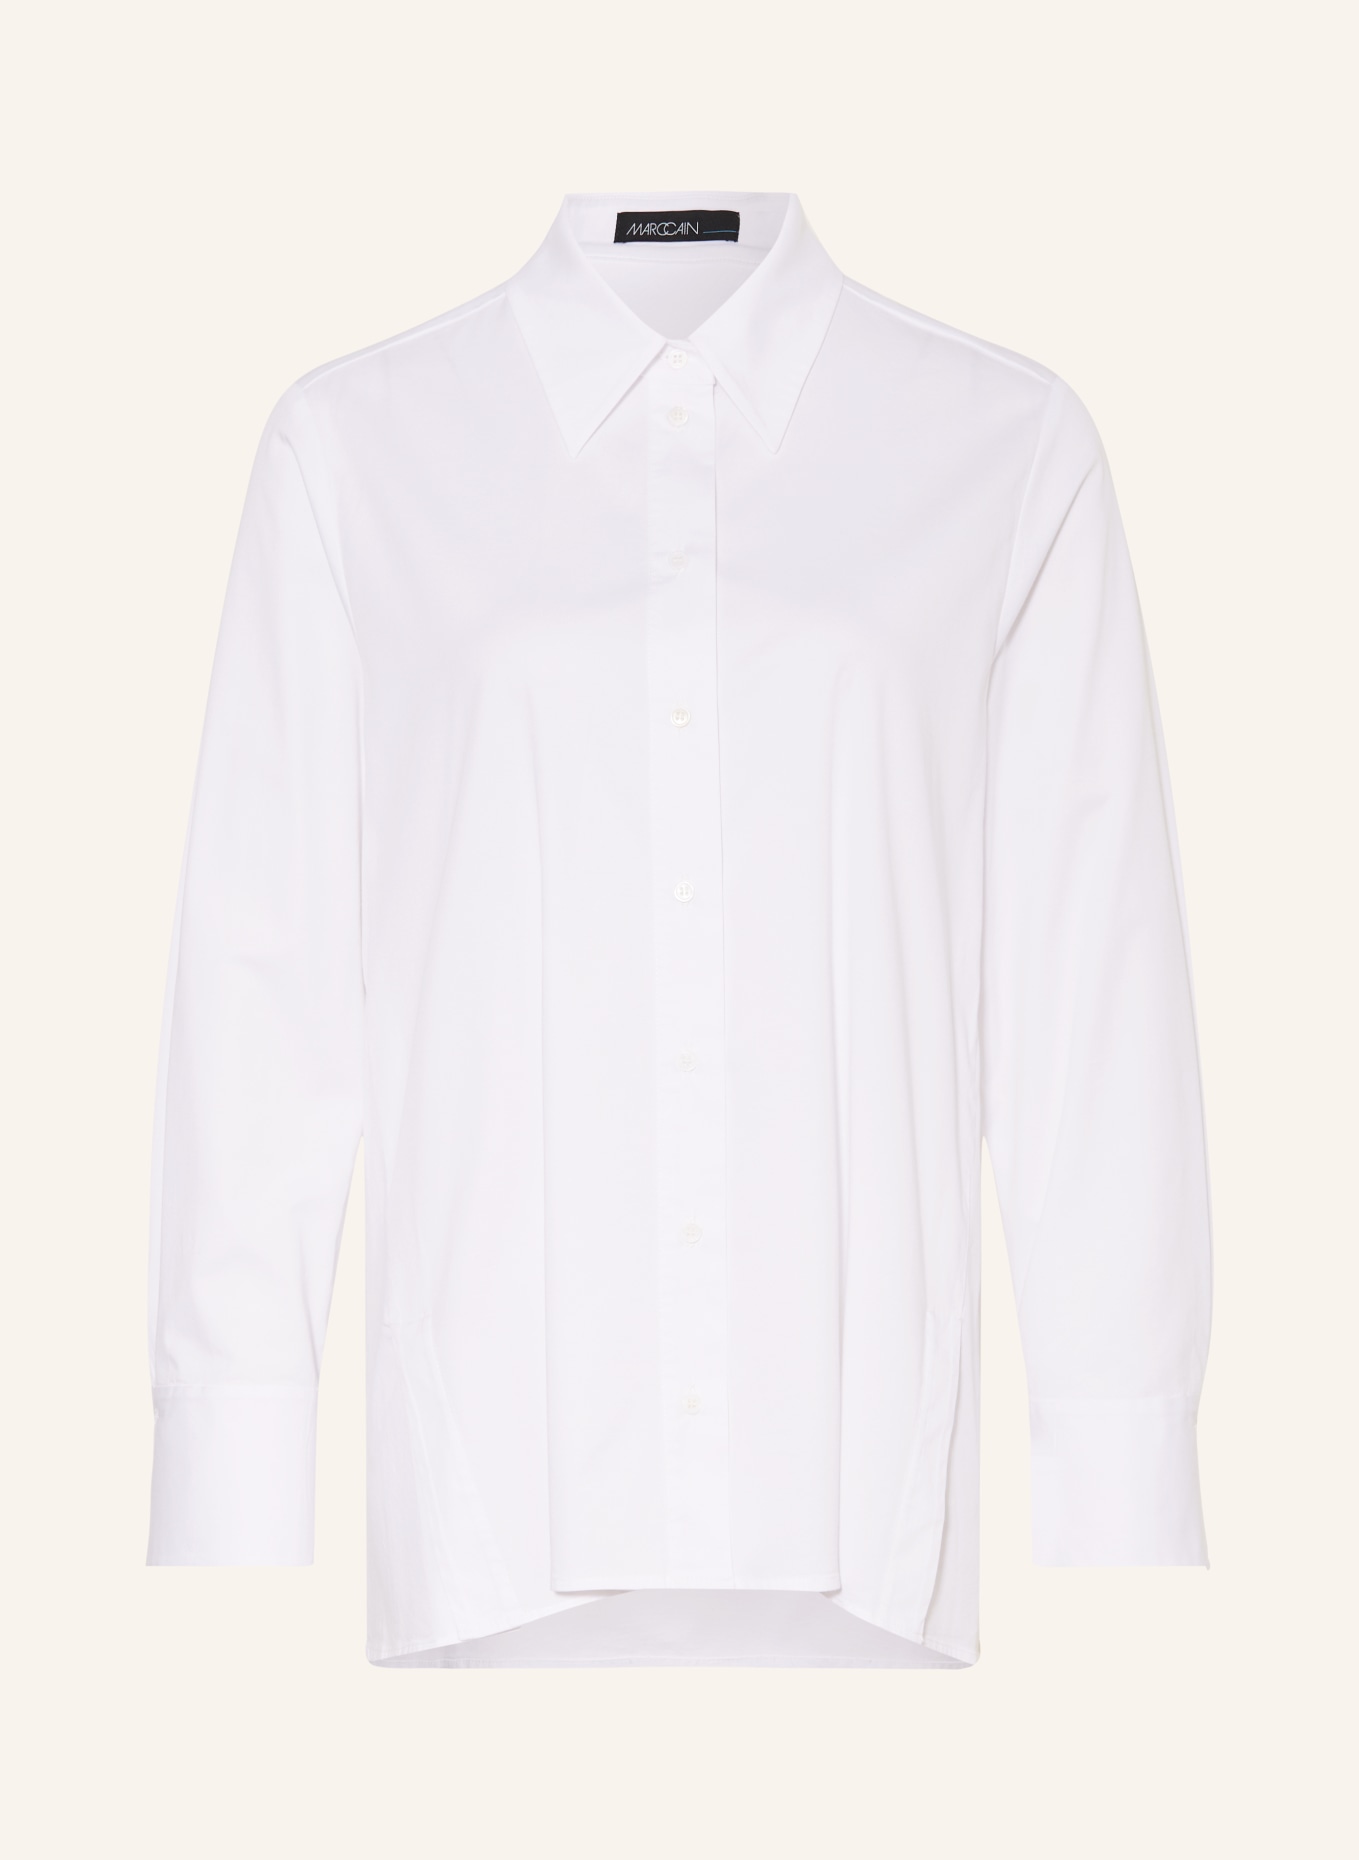 MARC CAIN Shirt blouse, Color: WHITE (Image 1)